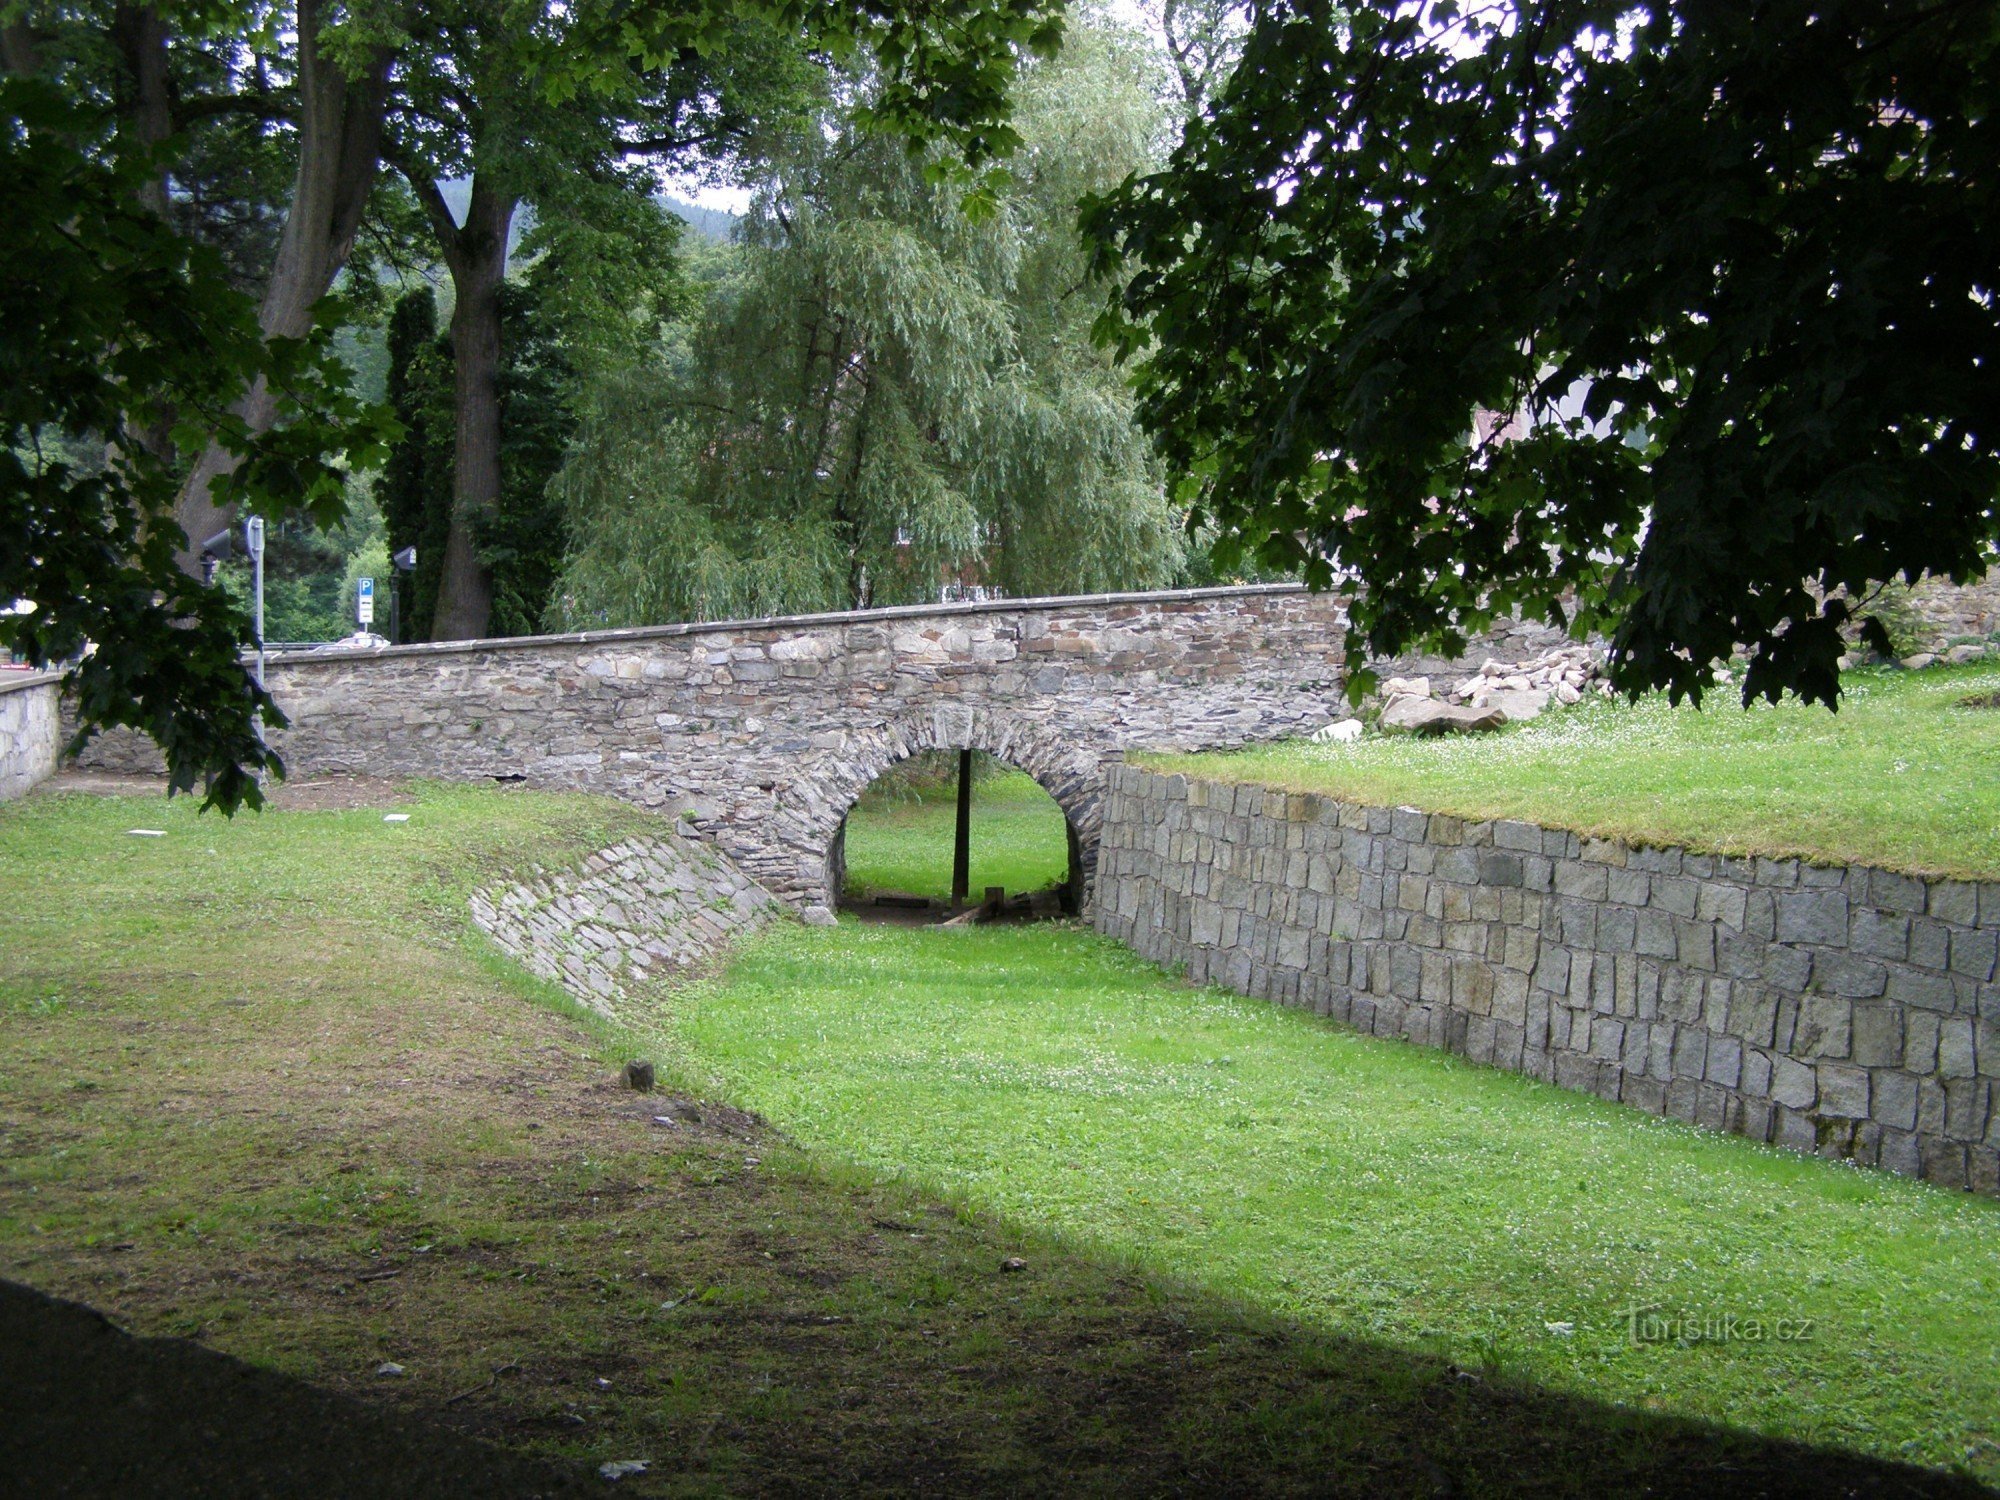 Jesenik - trdnjava, Narodni zgodovinski muzej Jesenick